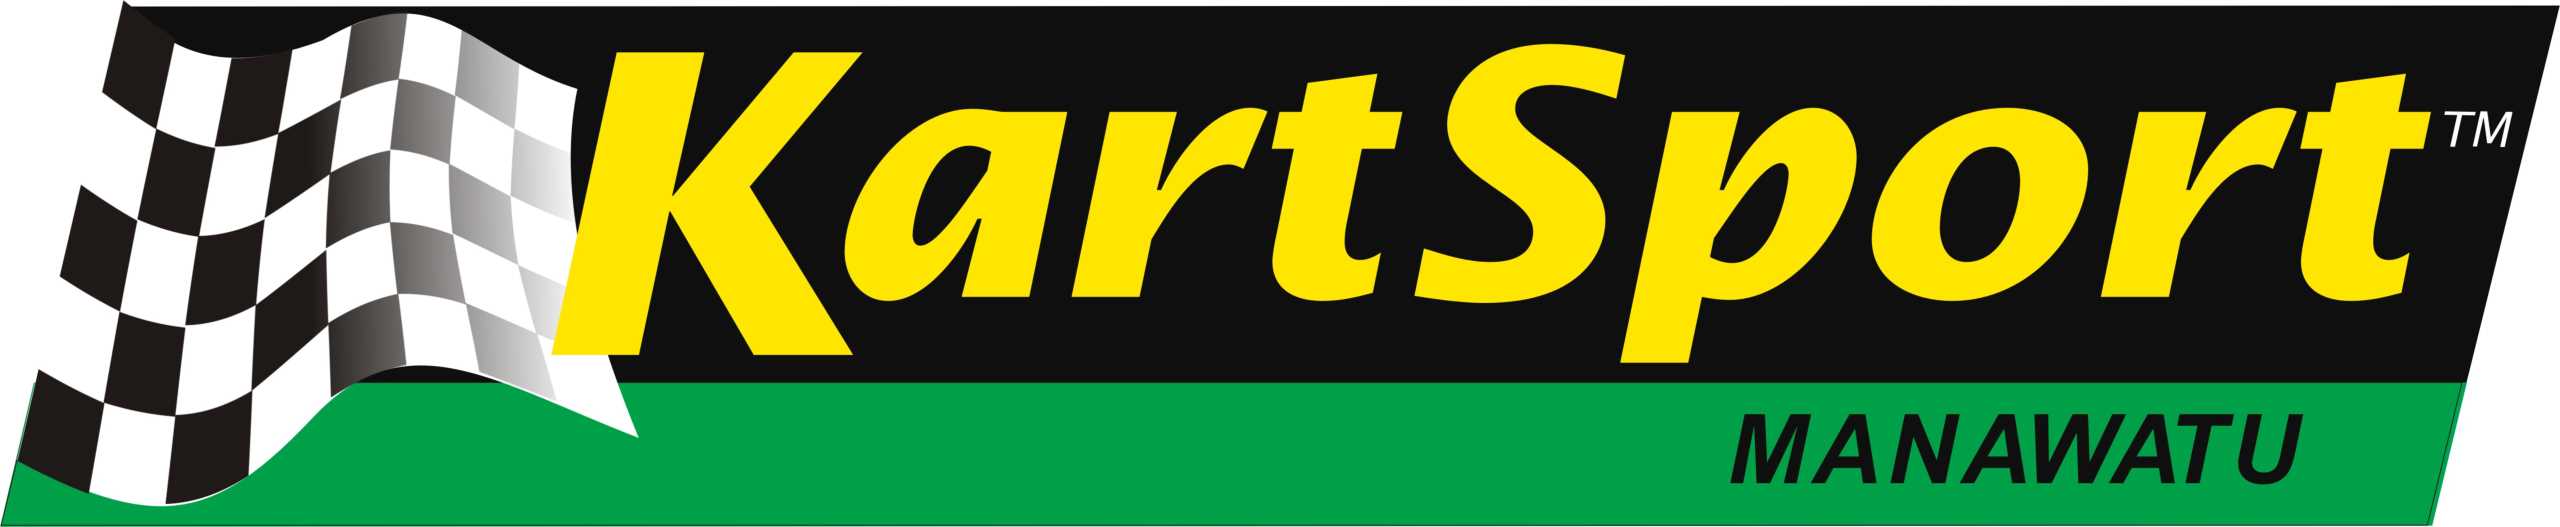 Kartsport Manawatu Logo